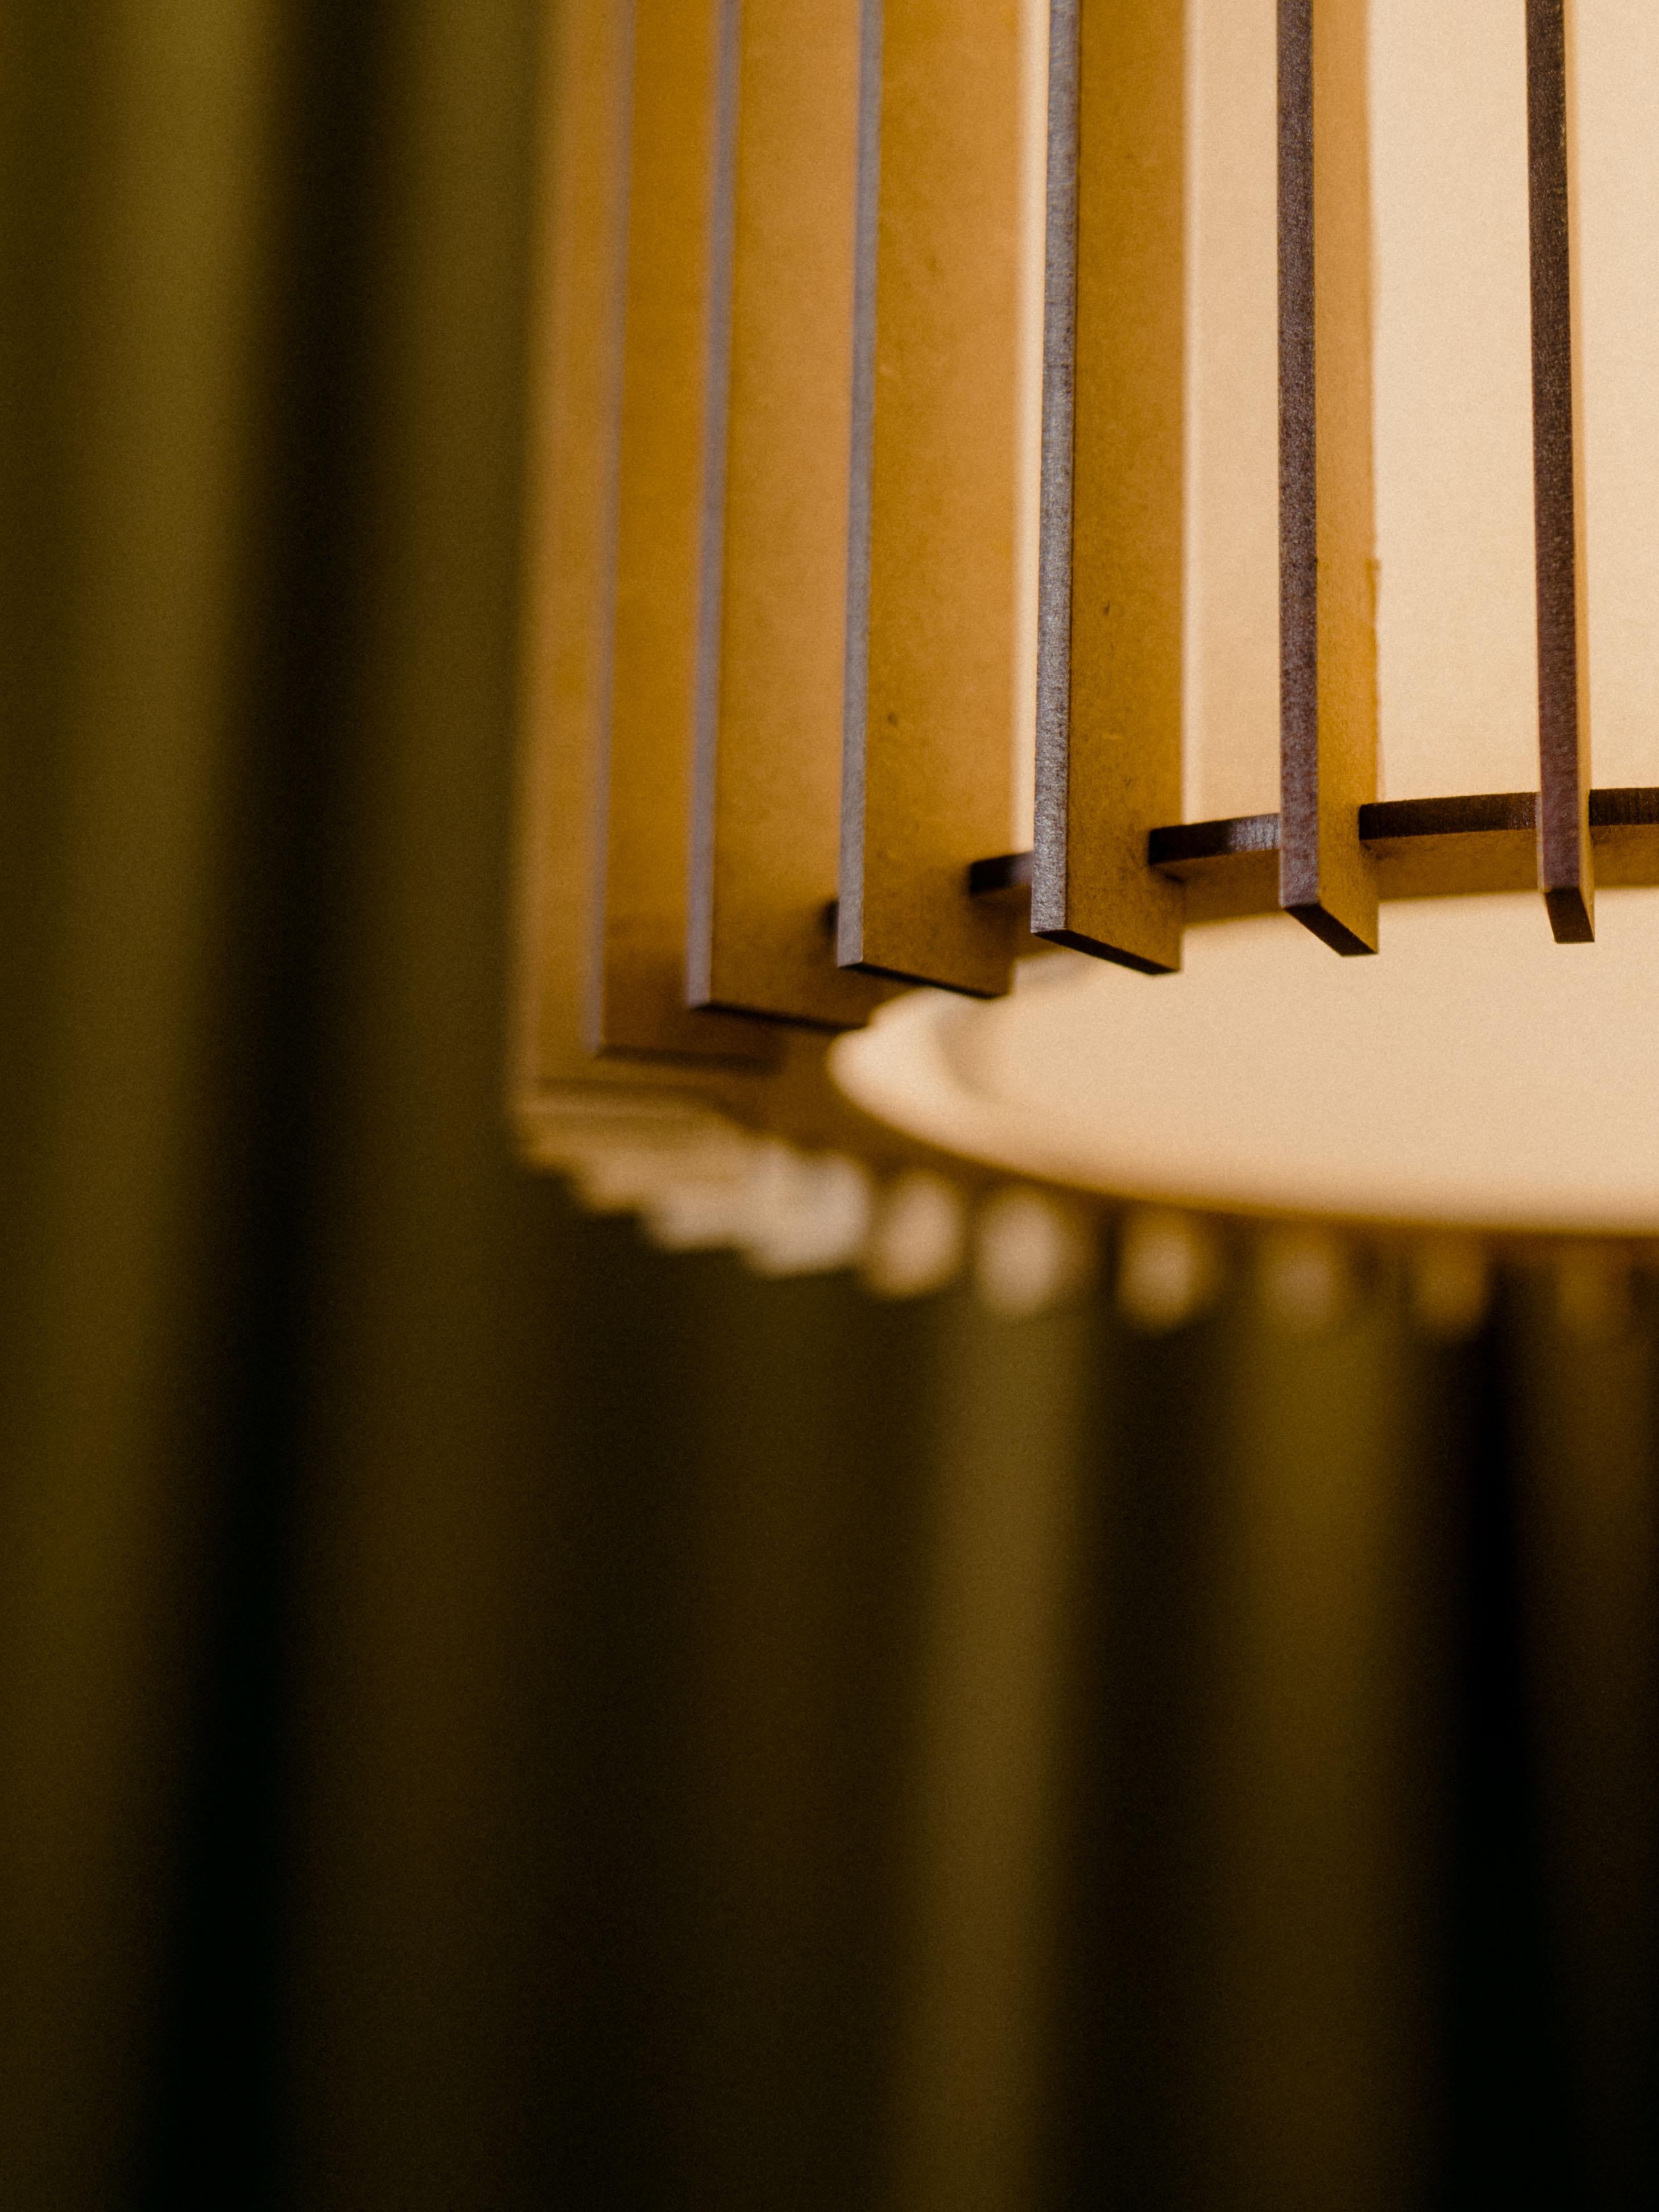 Suau-Lampen werden von Mediterranean Objects in Barcelona, Spanien, entworfen und hergestellt. 

Sie verfügen über eine Außenwand aus MDF-Holzlatten, die mit dem Laser zugeschnitten und einzeln so zusammengesetzt wurden, dass sie zwei